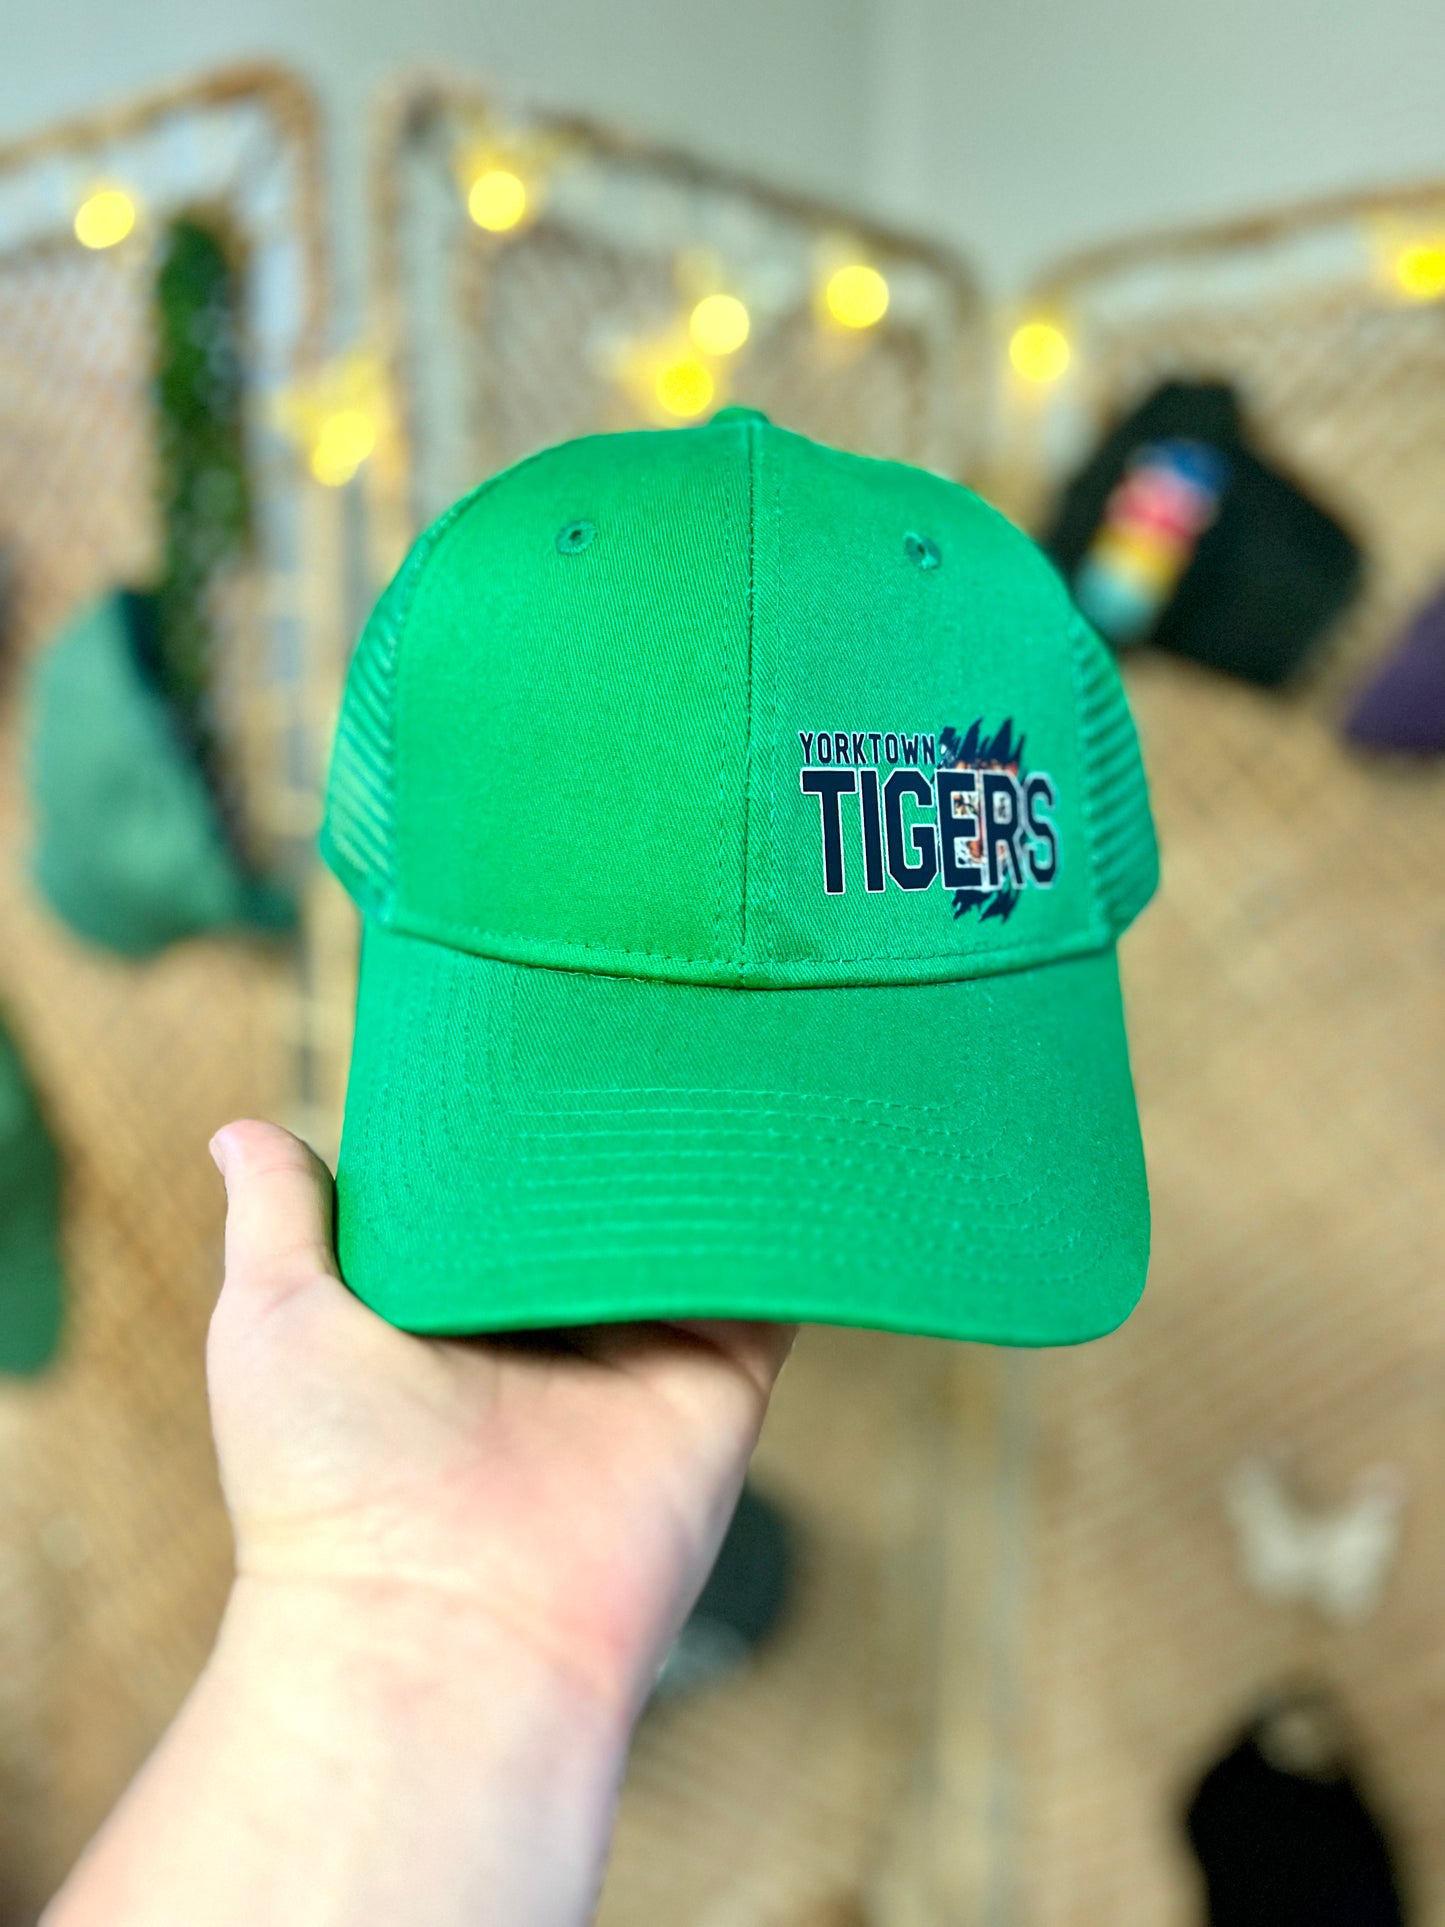 Yorktown Tigers Green Trucker Hat - Men’s